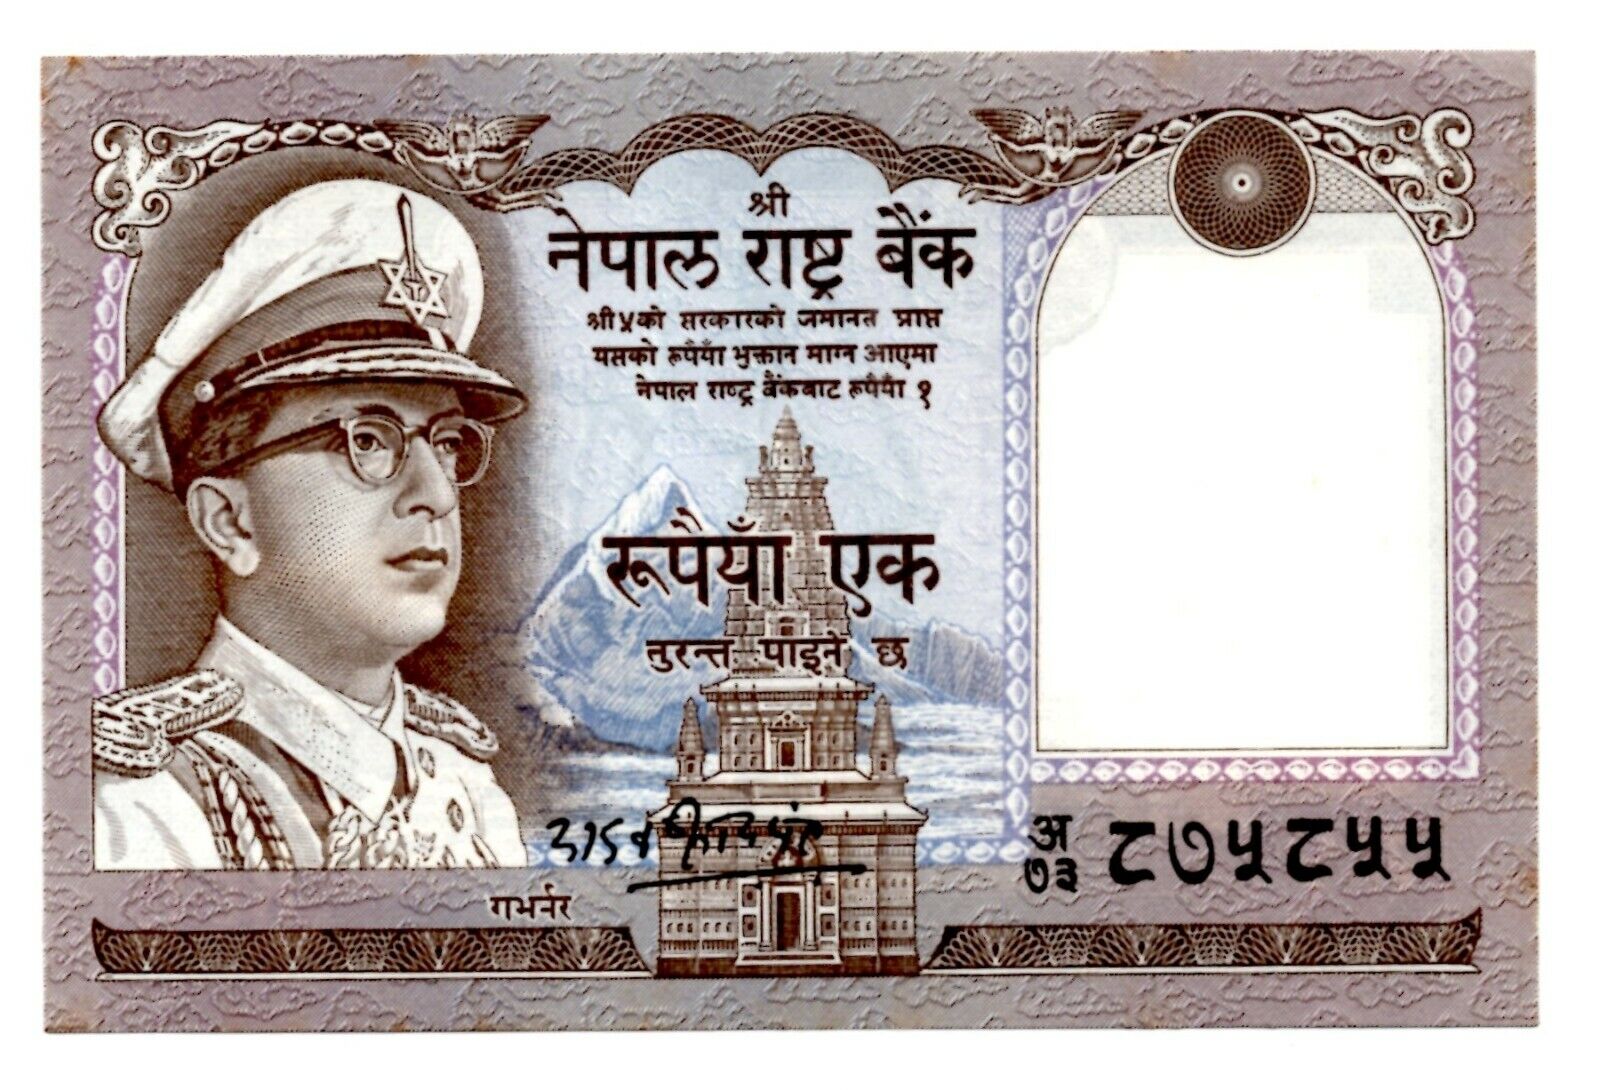 Nepal 1 Rupee Nd 1972 P-16